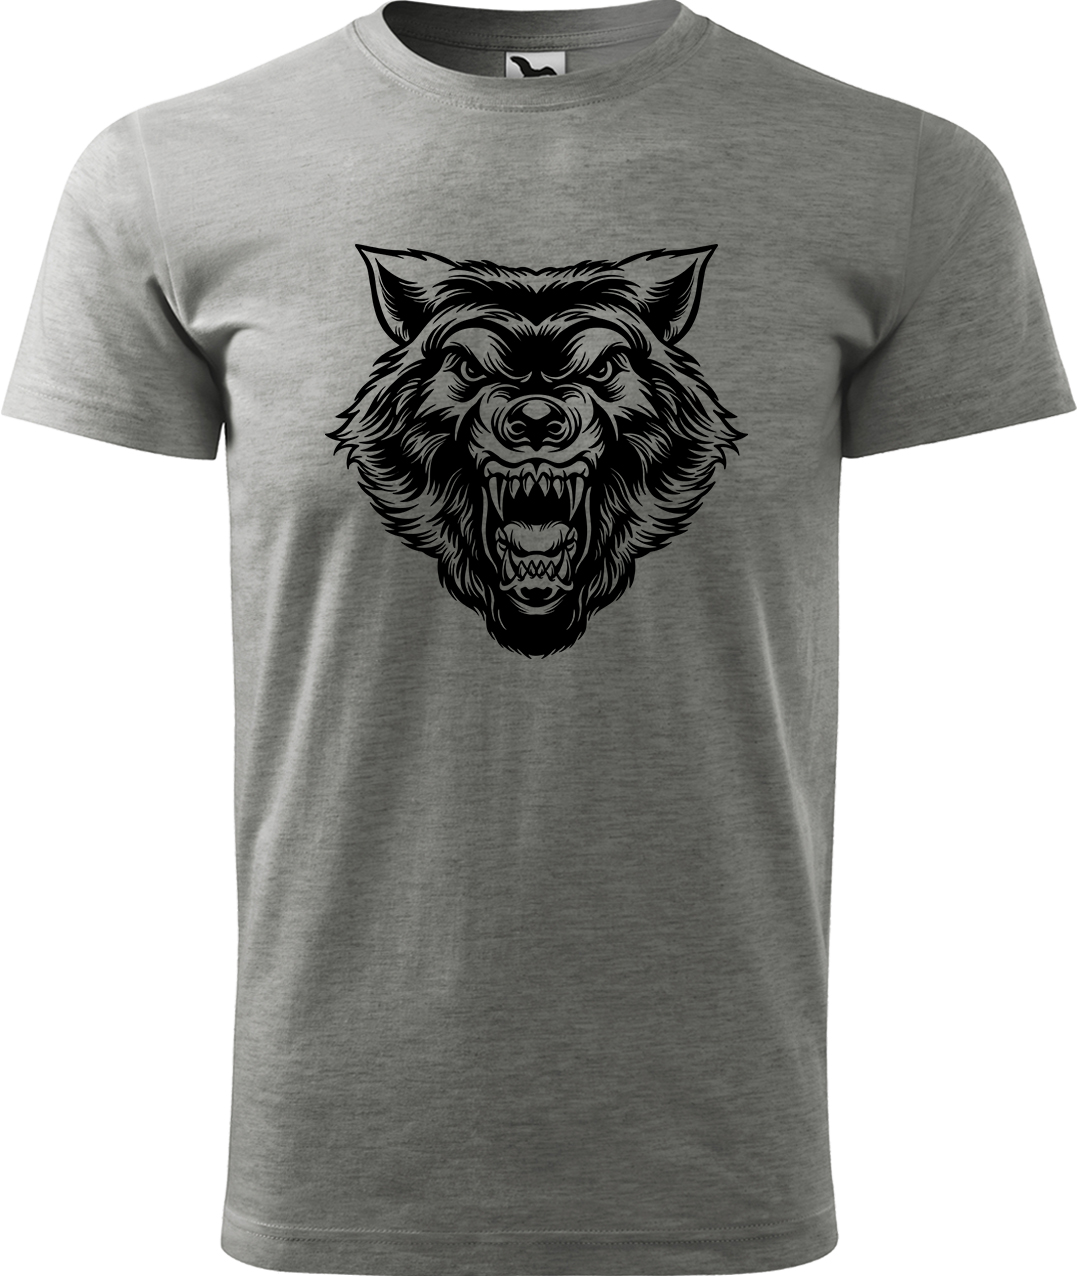 Pánské tričko s vlkem - Rozzuřený vlk Velikost: S, Barva: Tmavě šedý melír (12), Střih: pánský